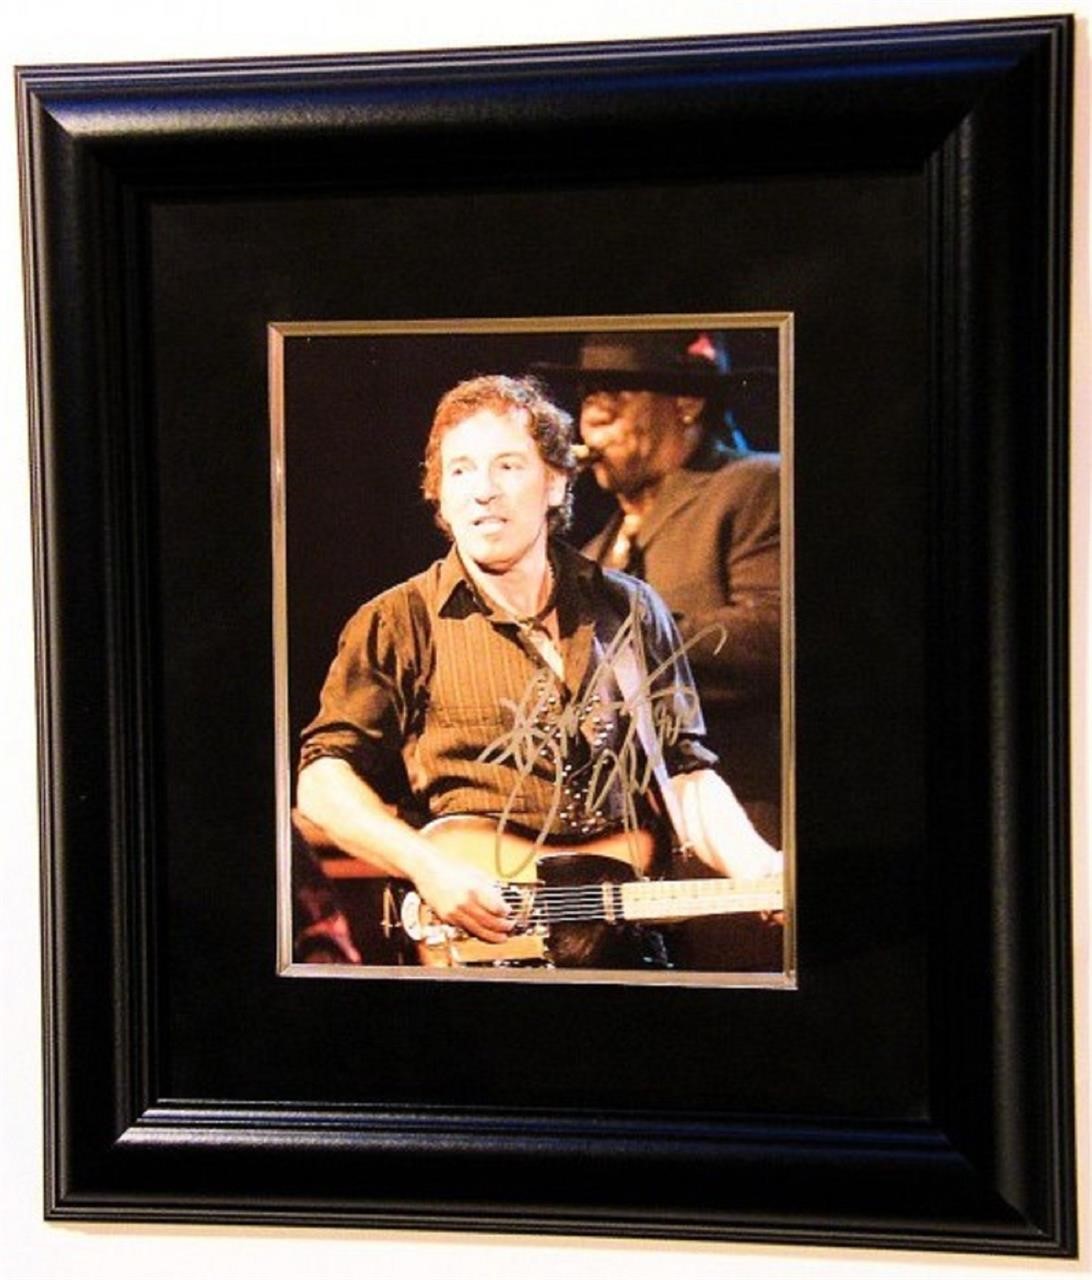 Framed Bruce Springsteen signed photo